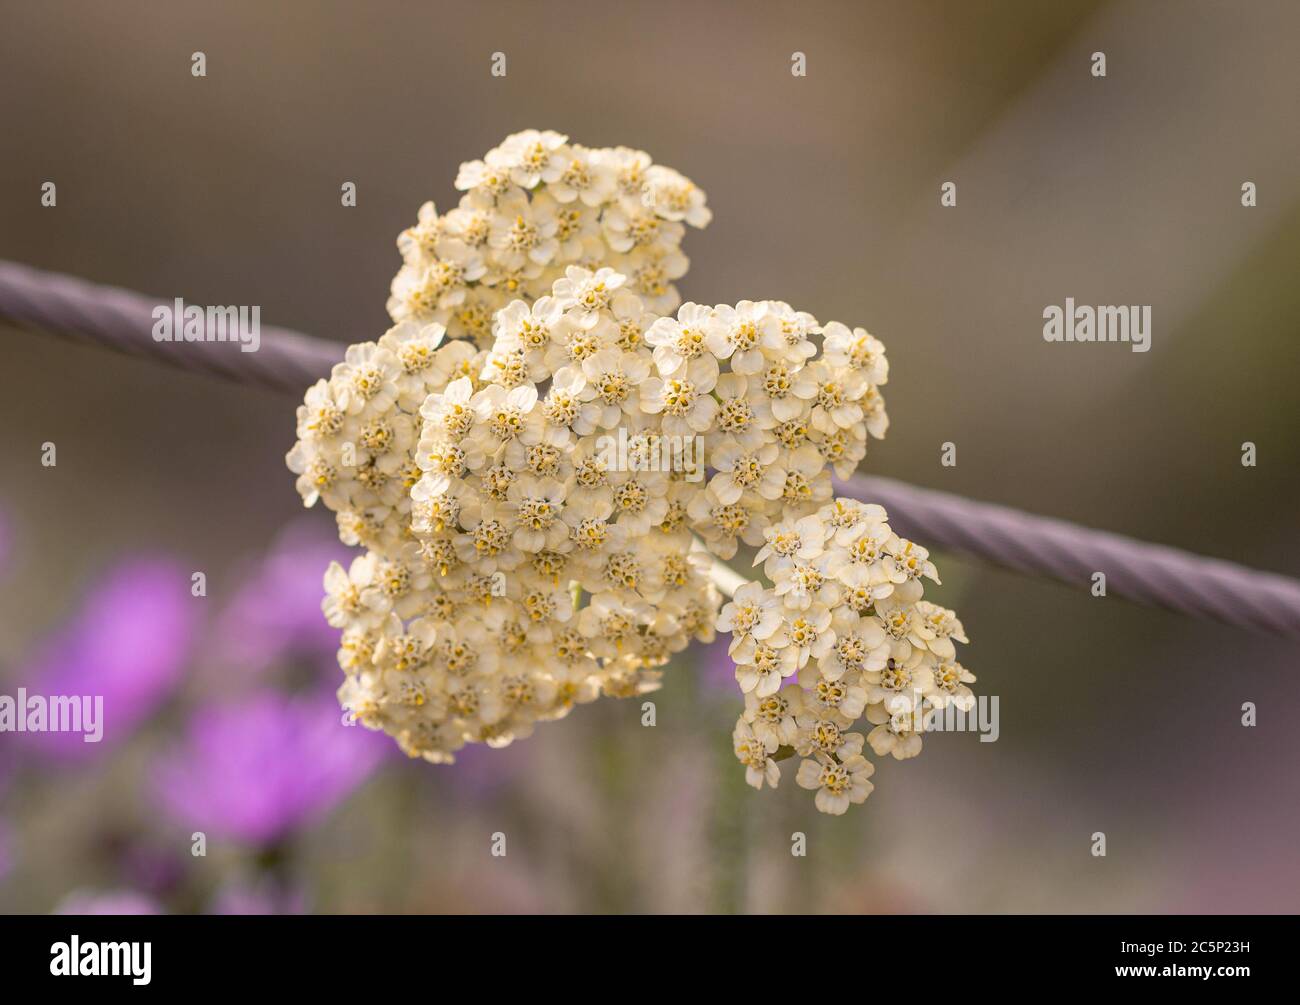 pastel yarrow (achillea millefolium) blossom in botanical garden with blurred background Stock Photo